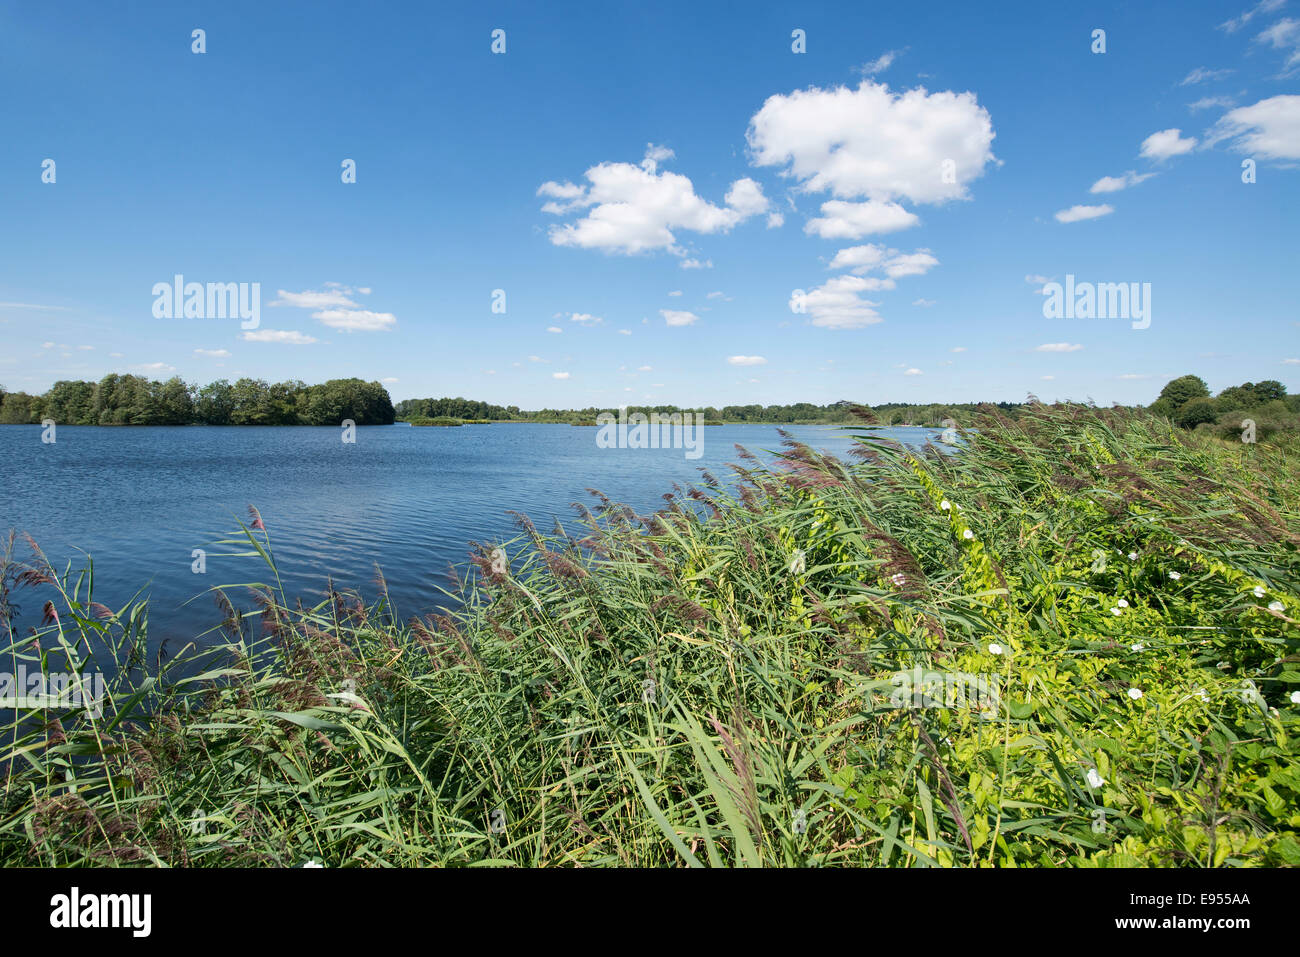 Paysage de l'étang, Meißendorf Meißendorf, la réserve naturelle des lacs, Basse-Saxe, Allemagne Banque D'Images